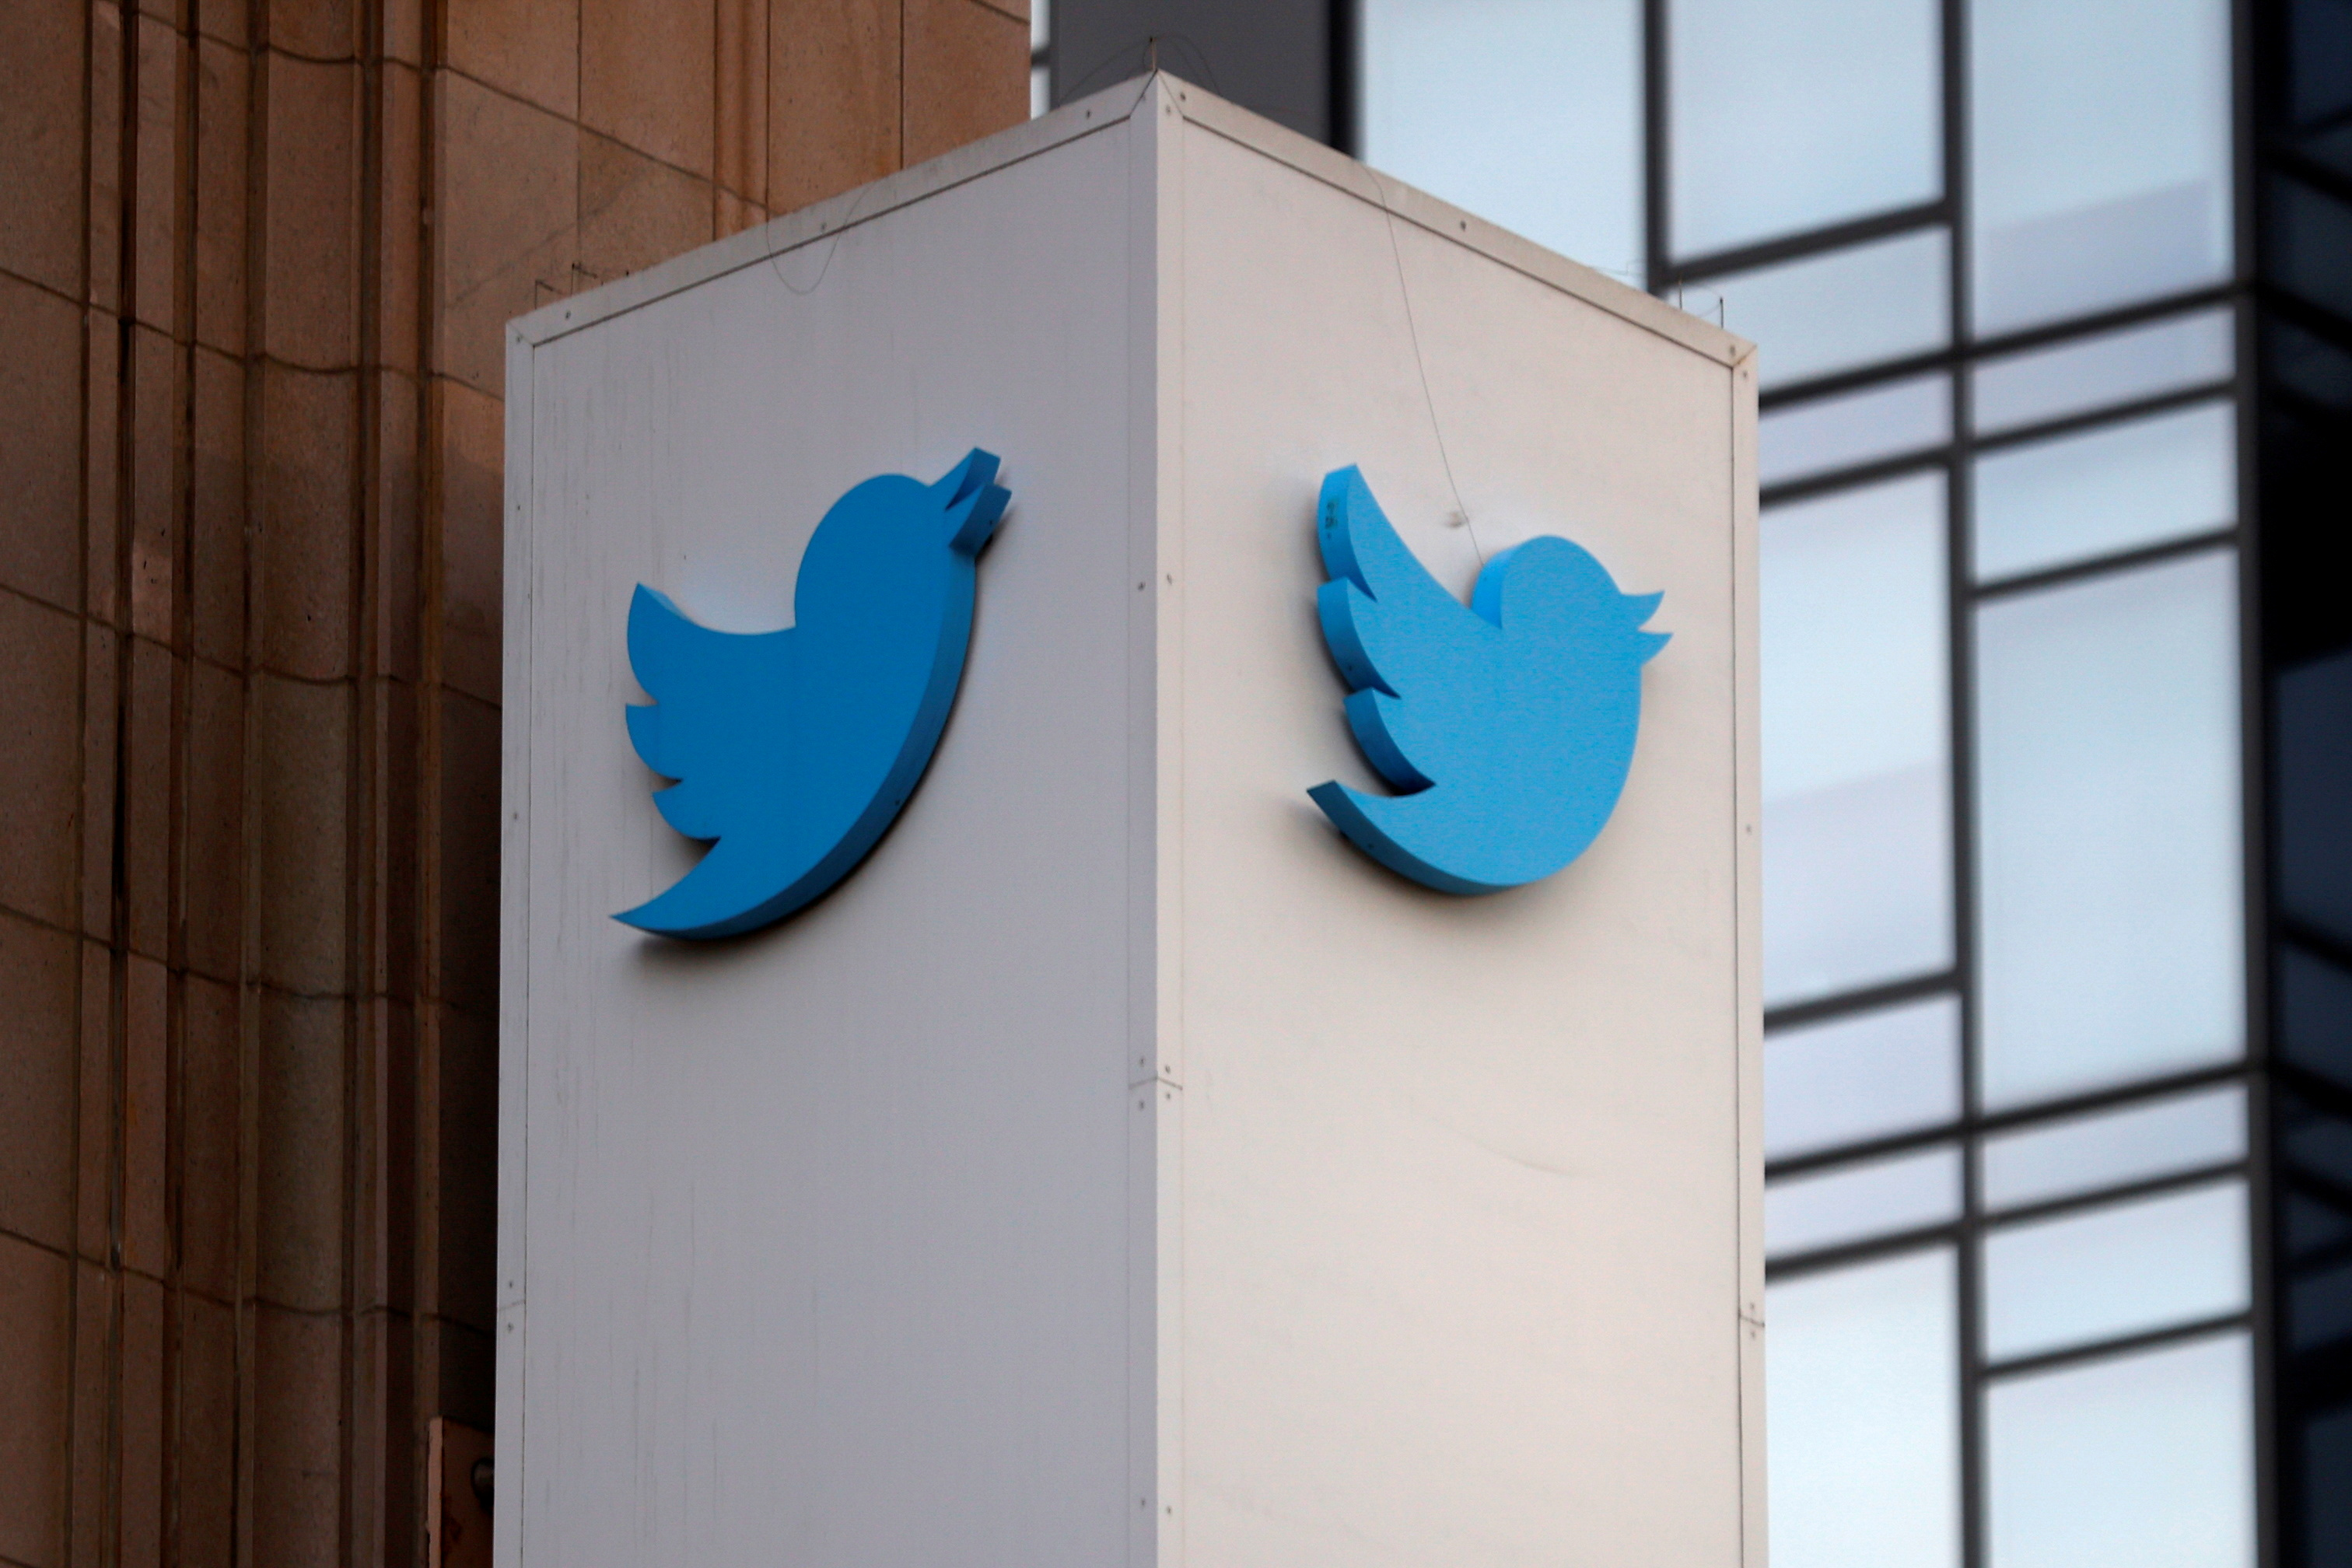 Haine en ligne : Twitter attaqué en justice par trois Français pour manque de réactivité